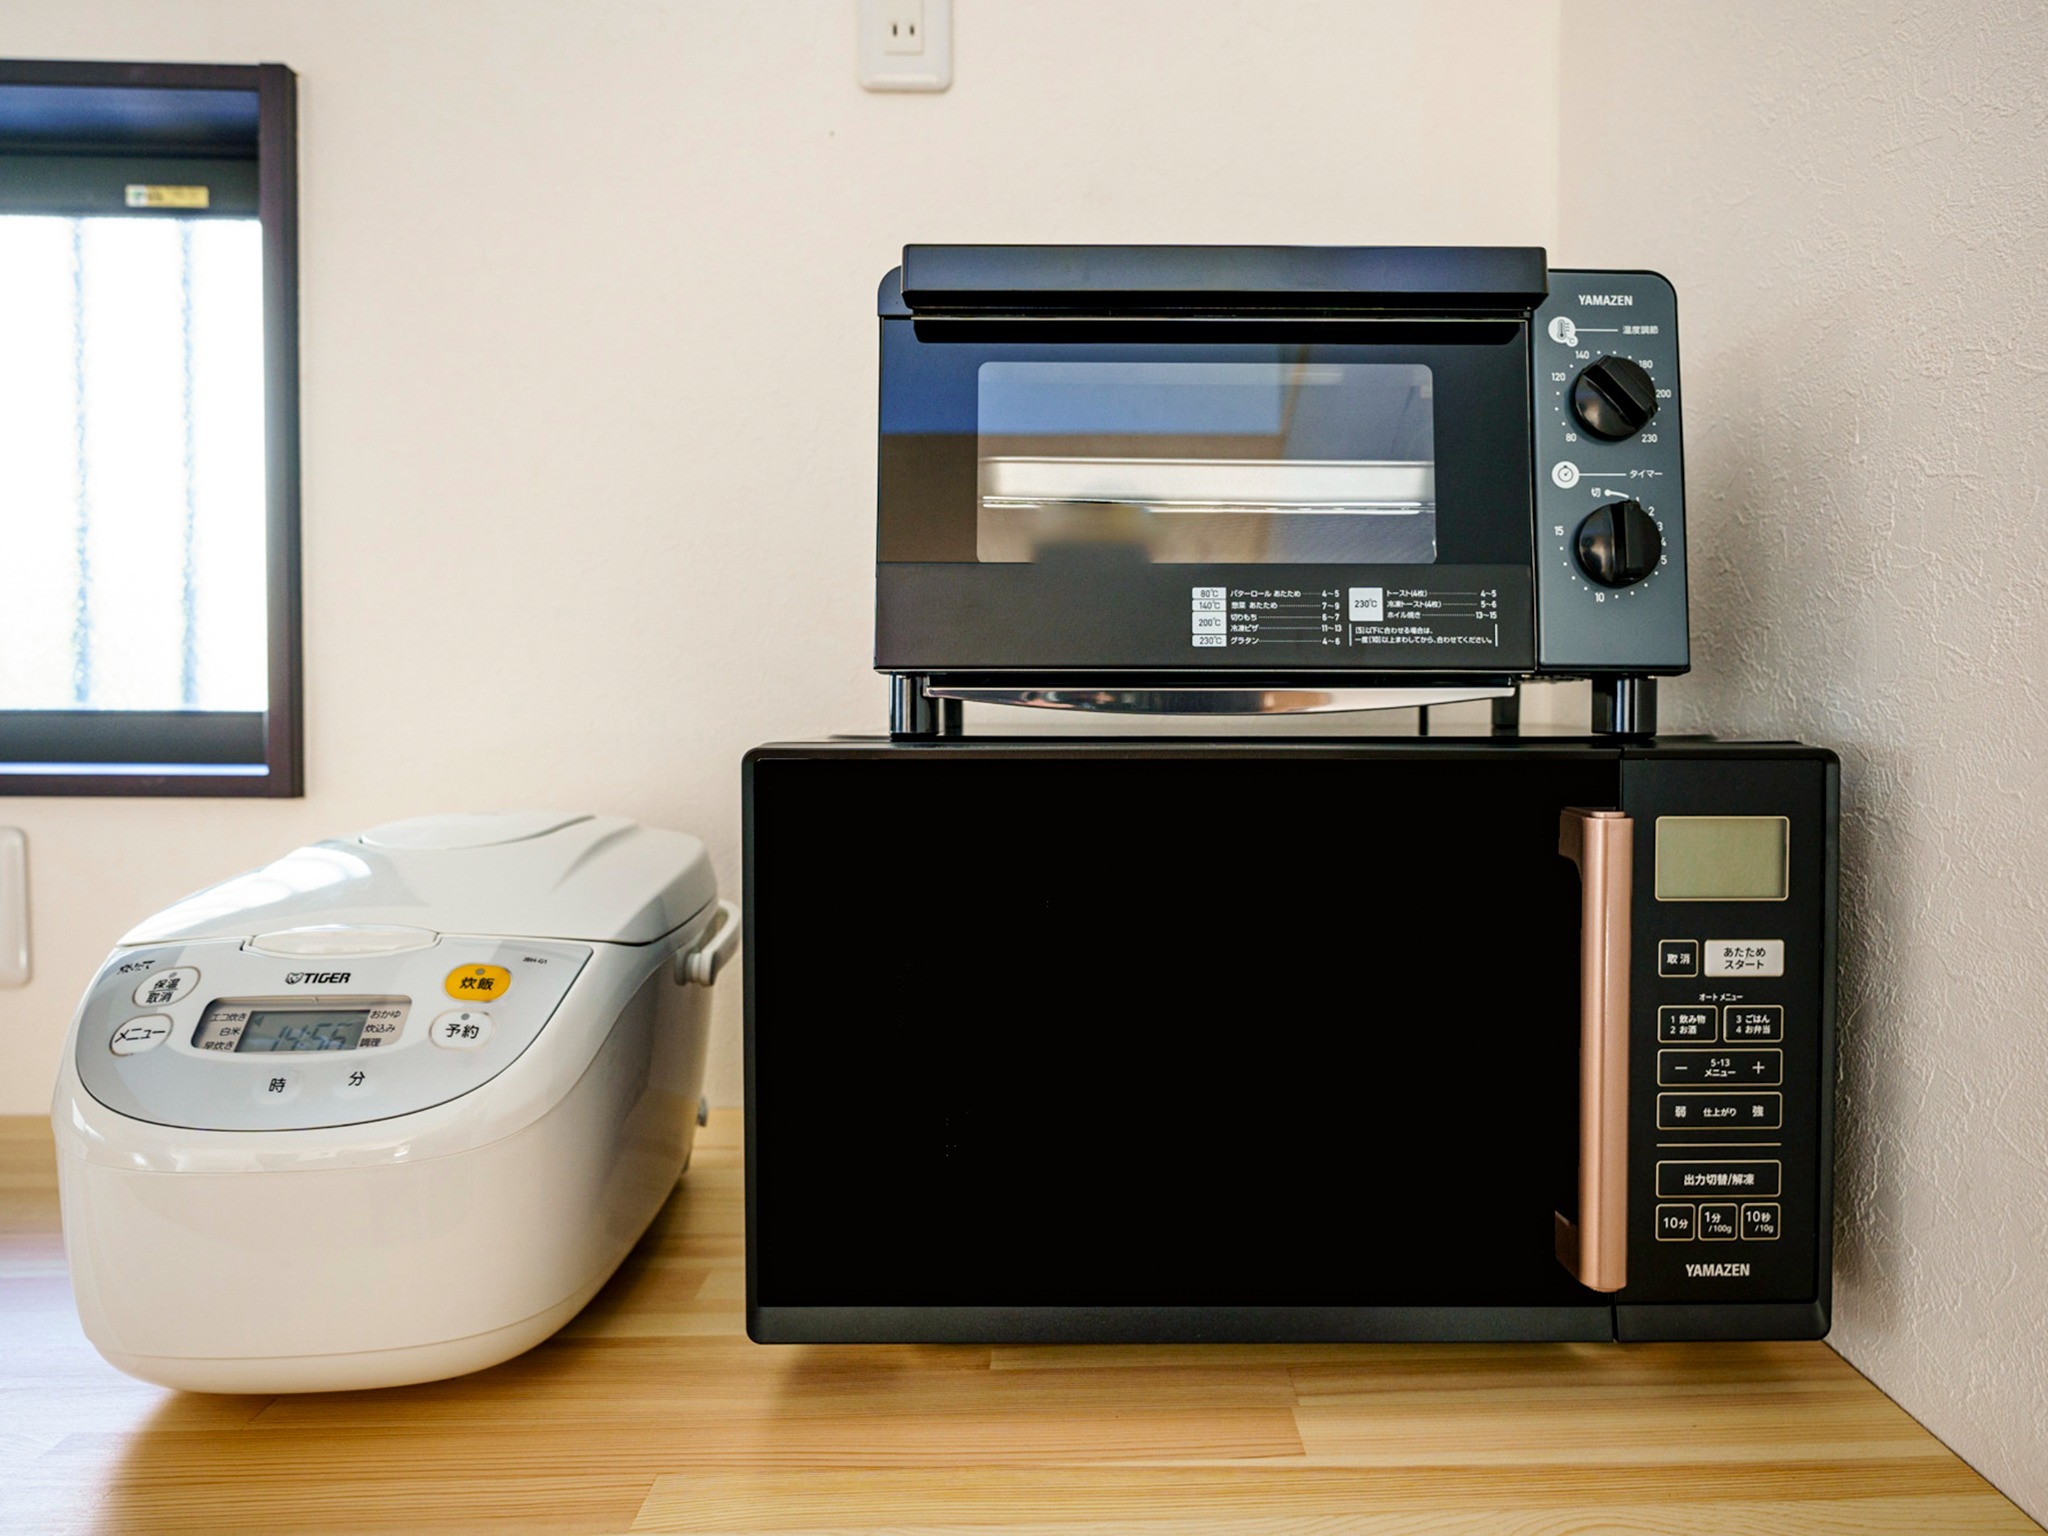 ・【キッチン】電子レンジ・トースター・炊飯器など調理家電をご用意しております